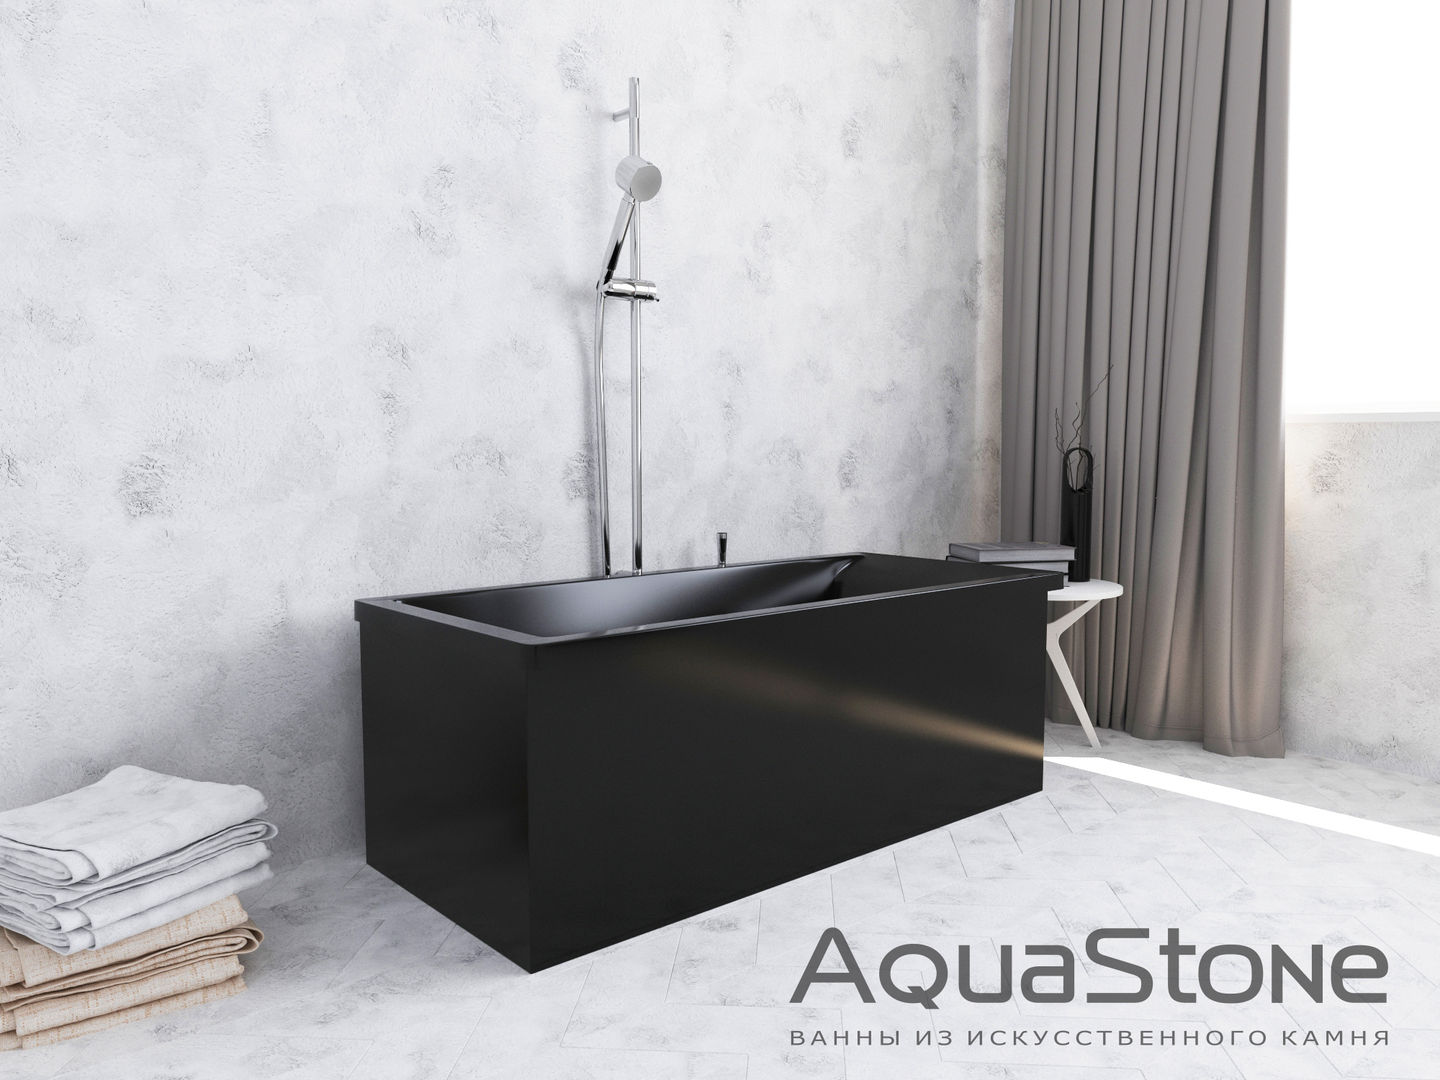 Визуализация: ванны из искусственного камня , OK Interior Design OK Interior Design 미니멀리스트 욕실 욕조 및 샤워 시설